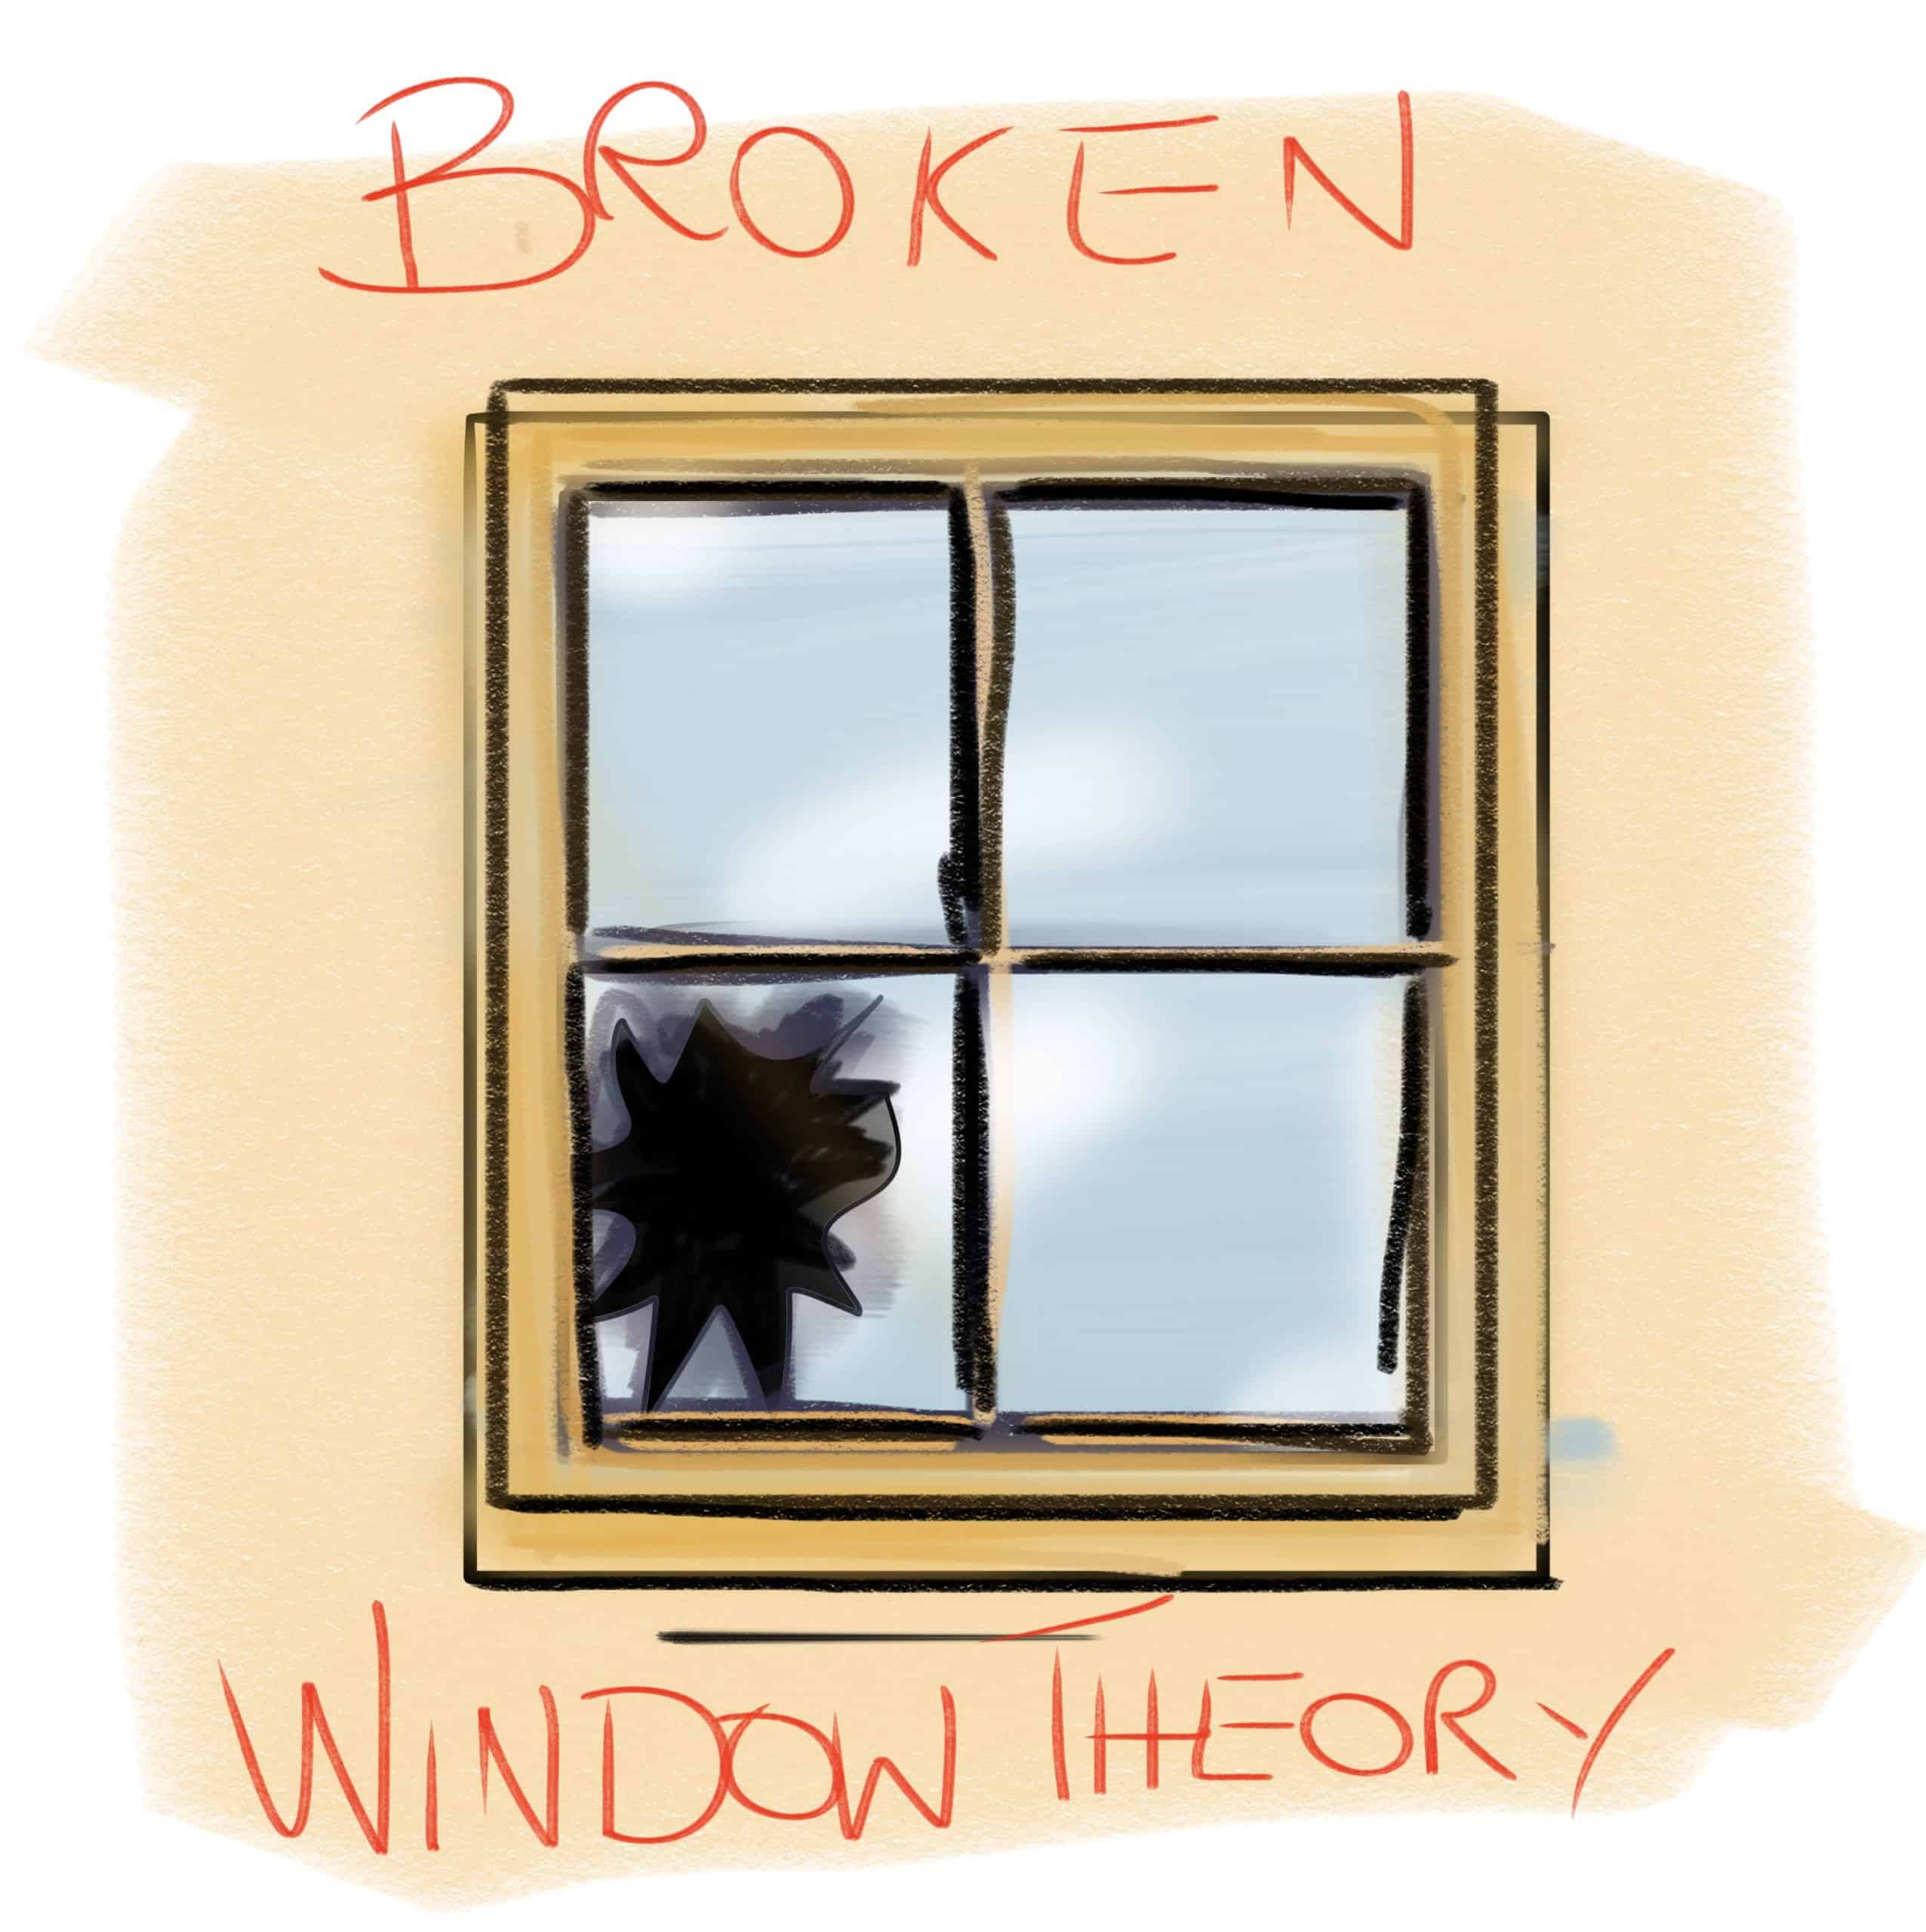 broken window theory quizlet